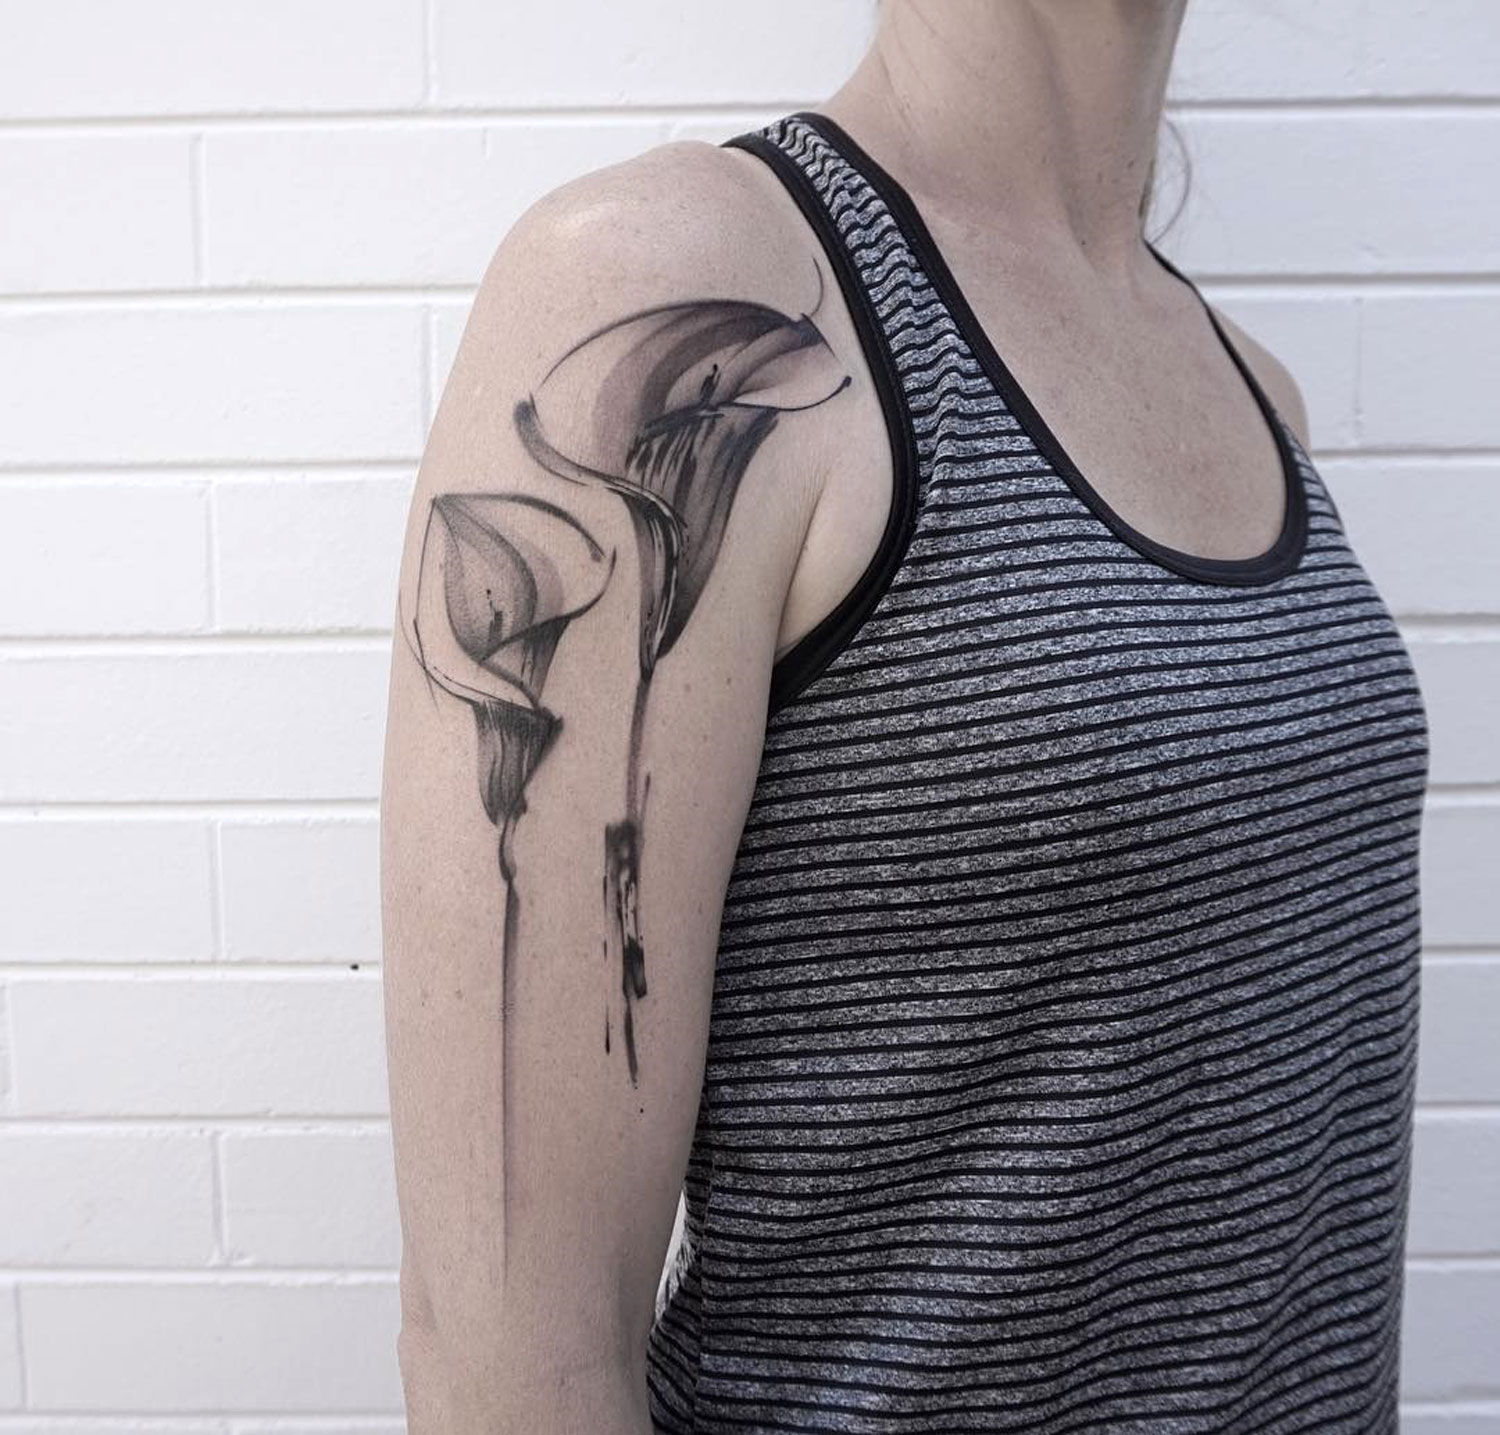 Tattoo by Lee Stewart